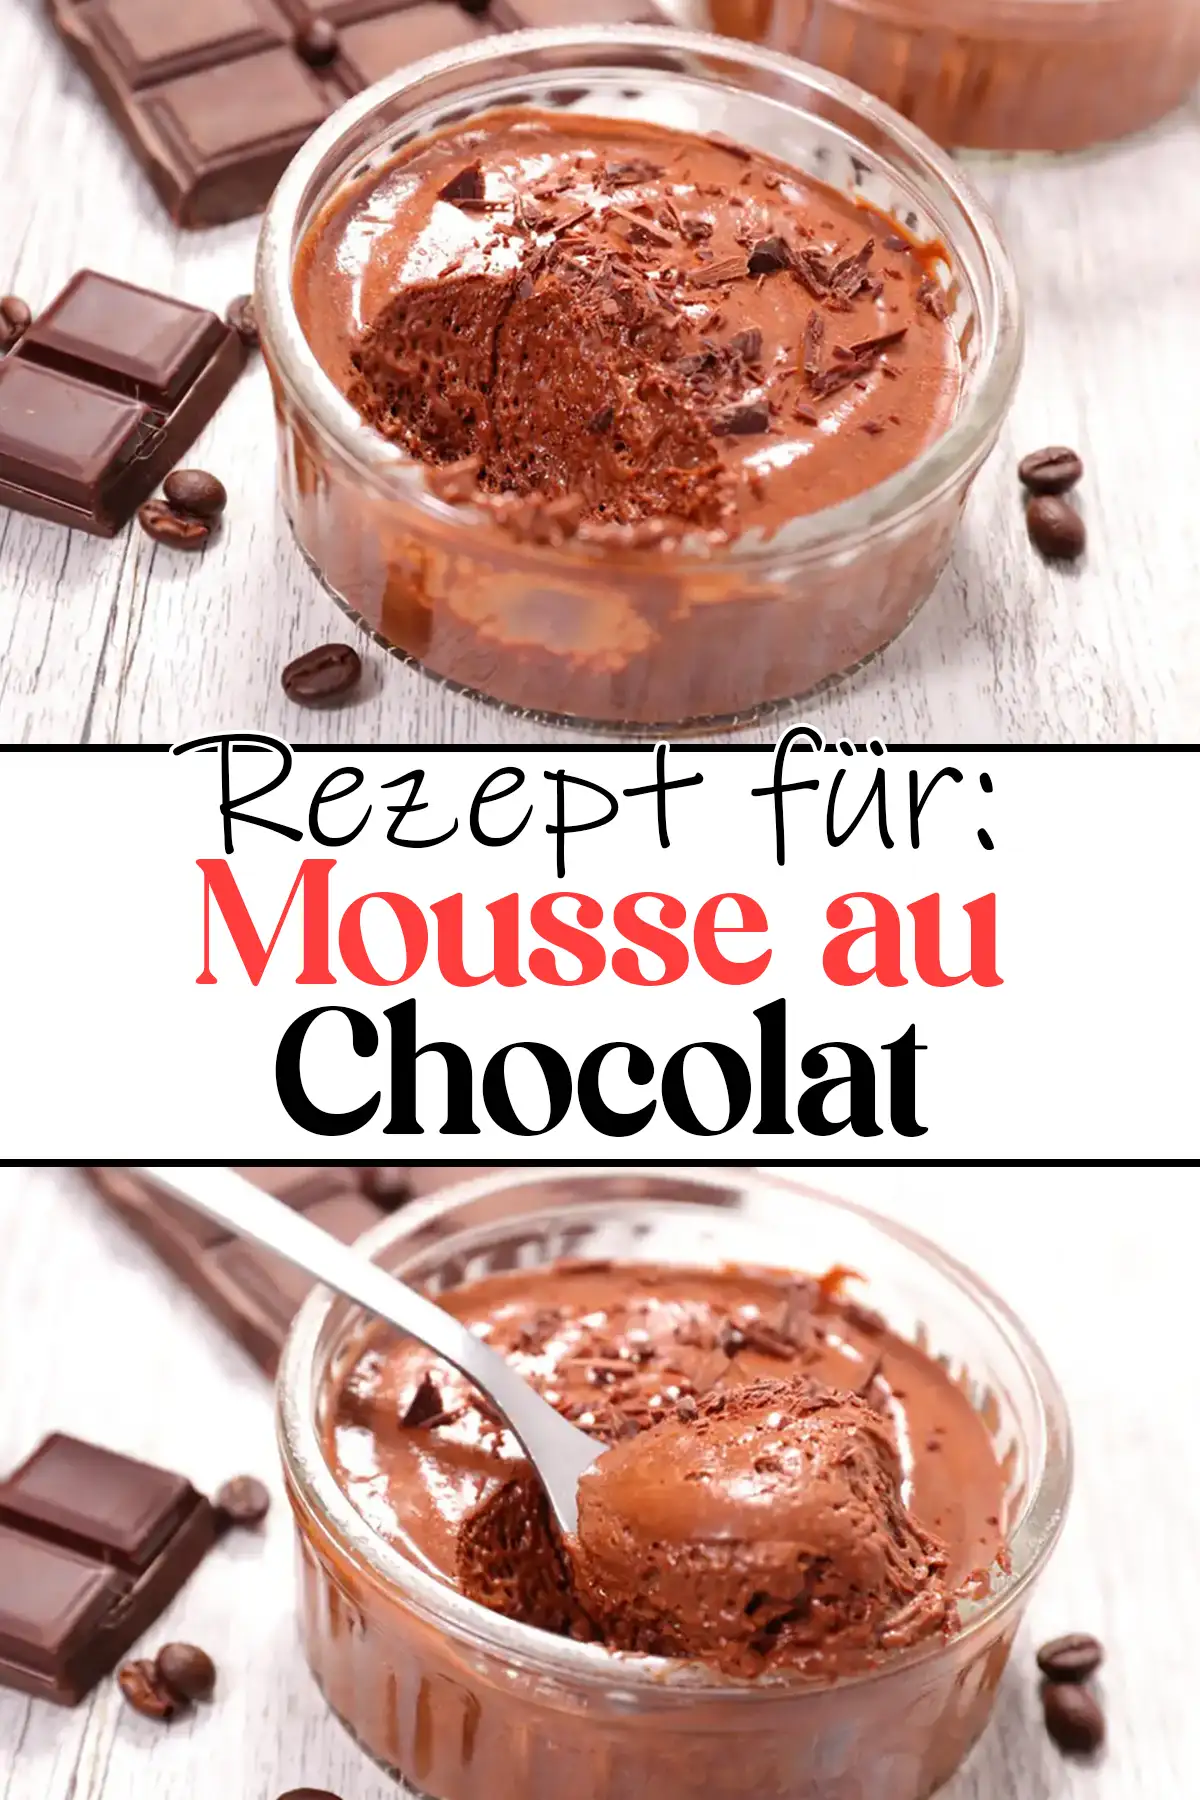 Das Ultimative Mousse au chocolat Rezept